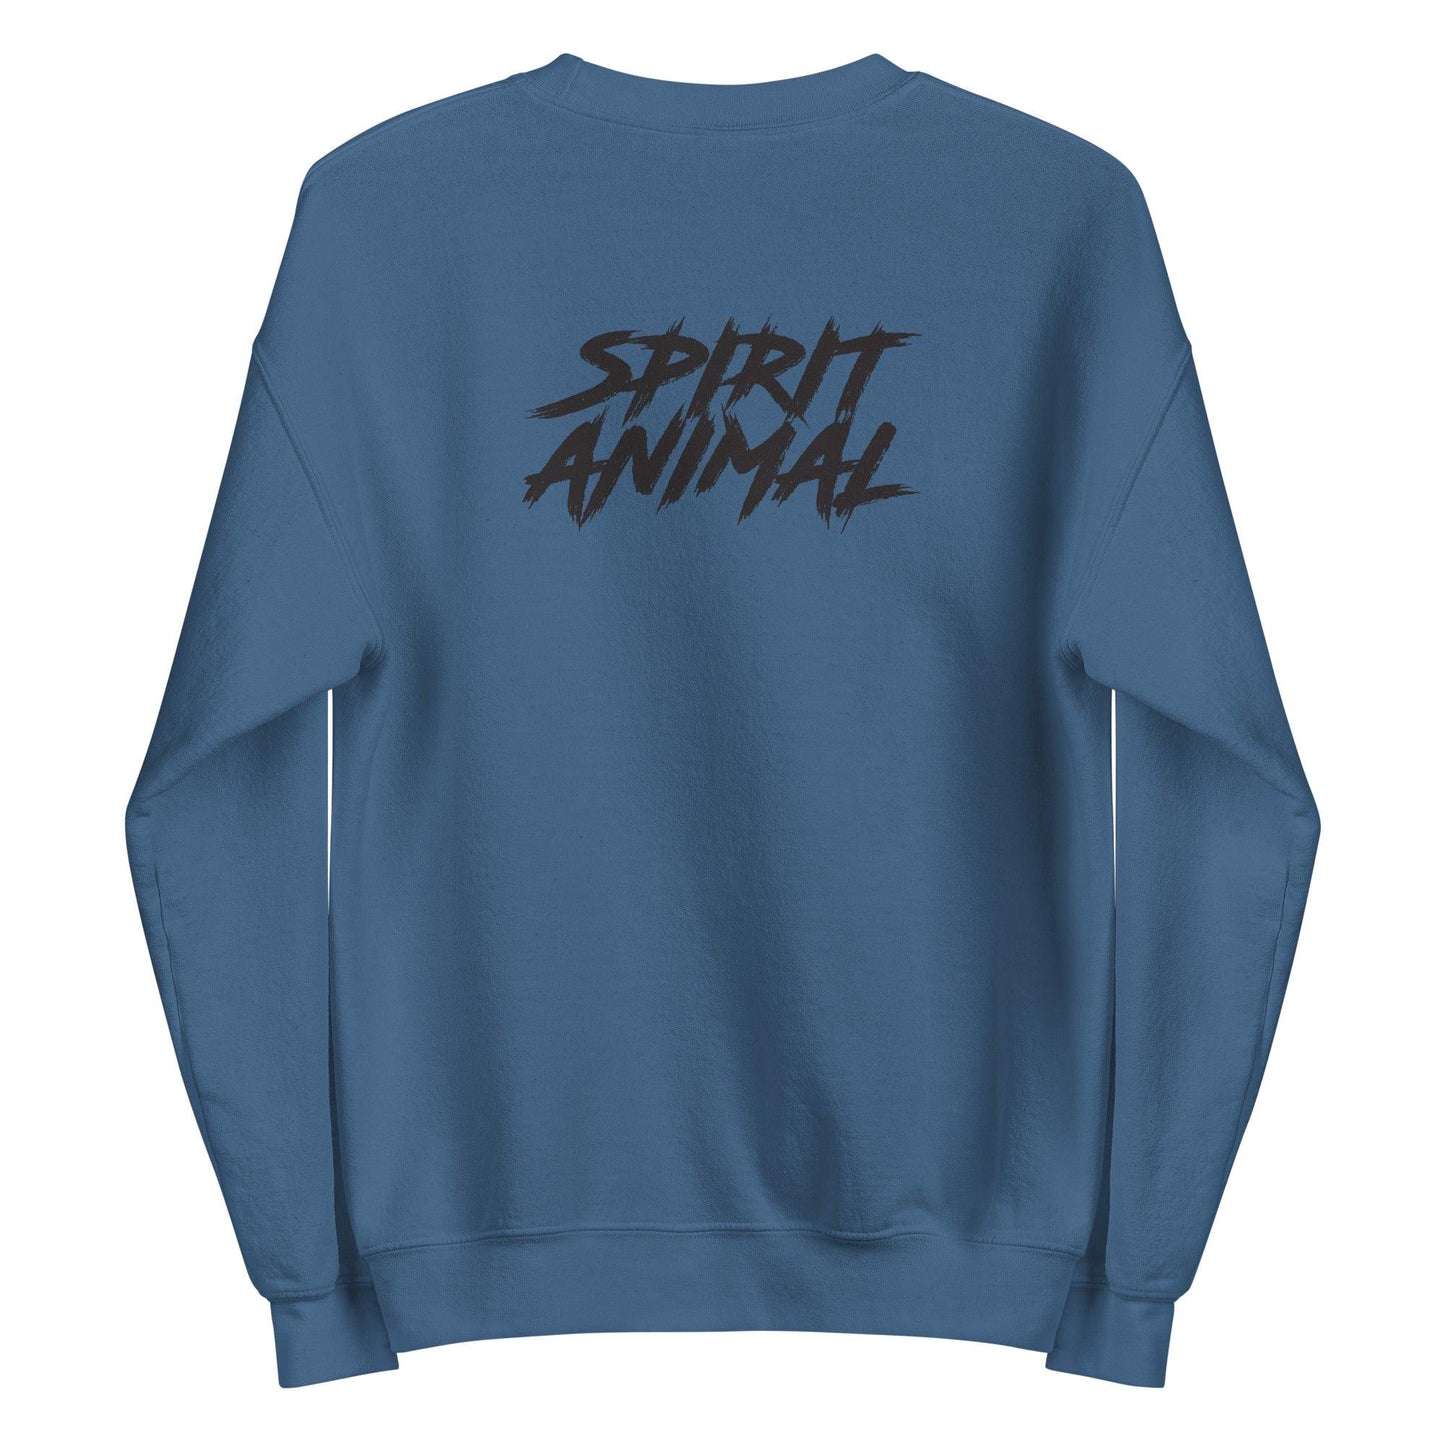 Scooby Wright III “SharkDawg” Sweatshirt - Fan Arch